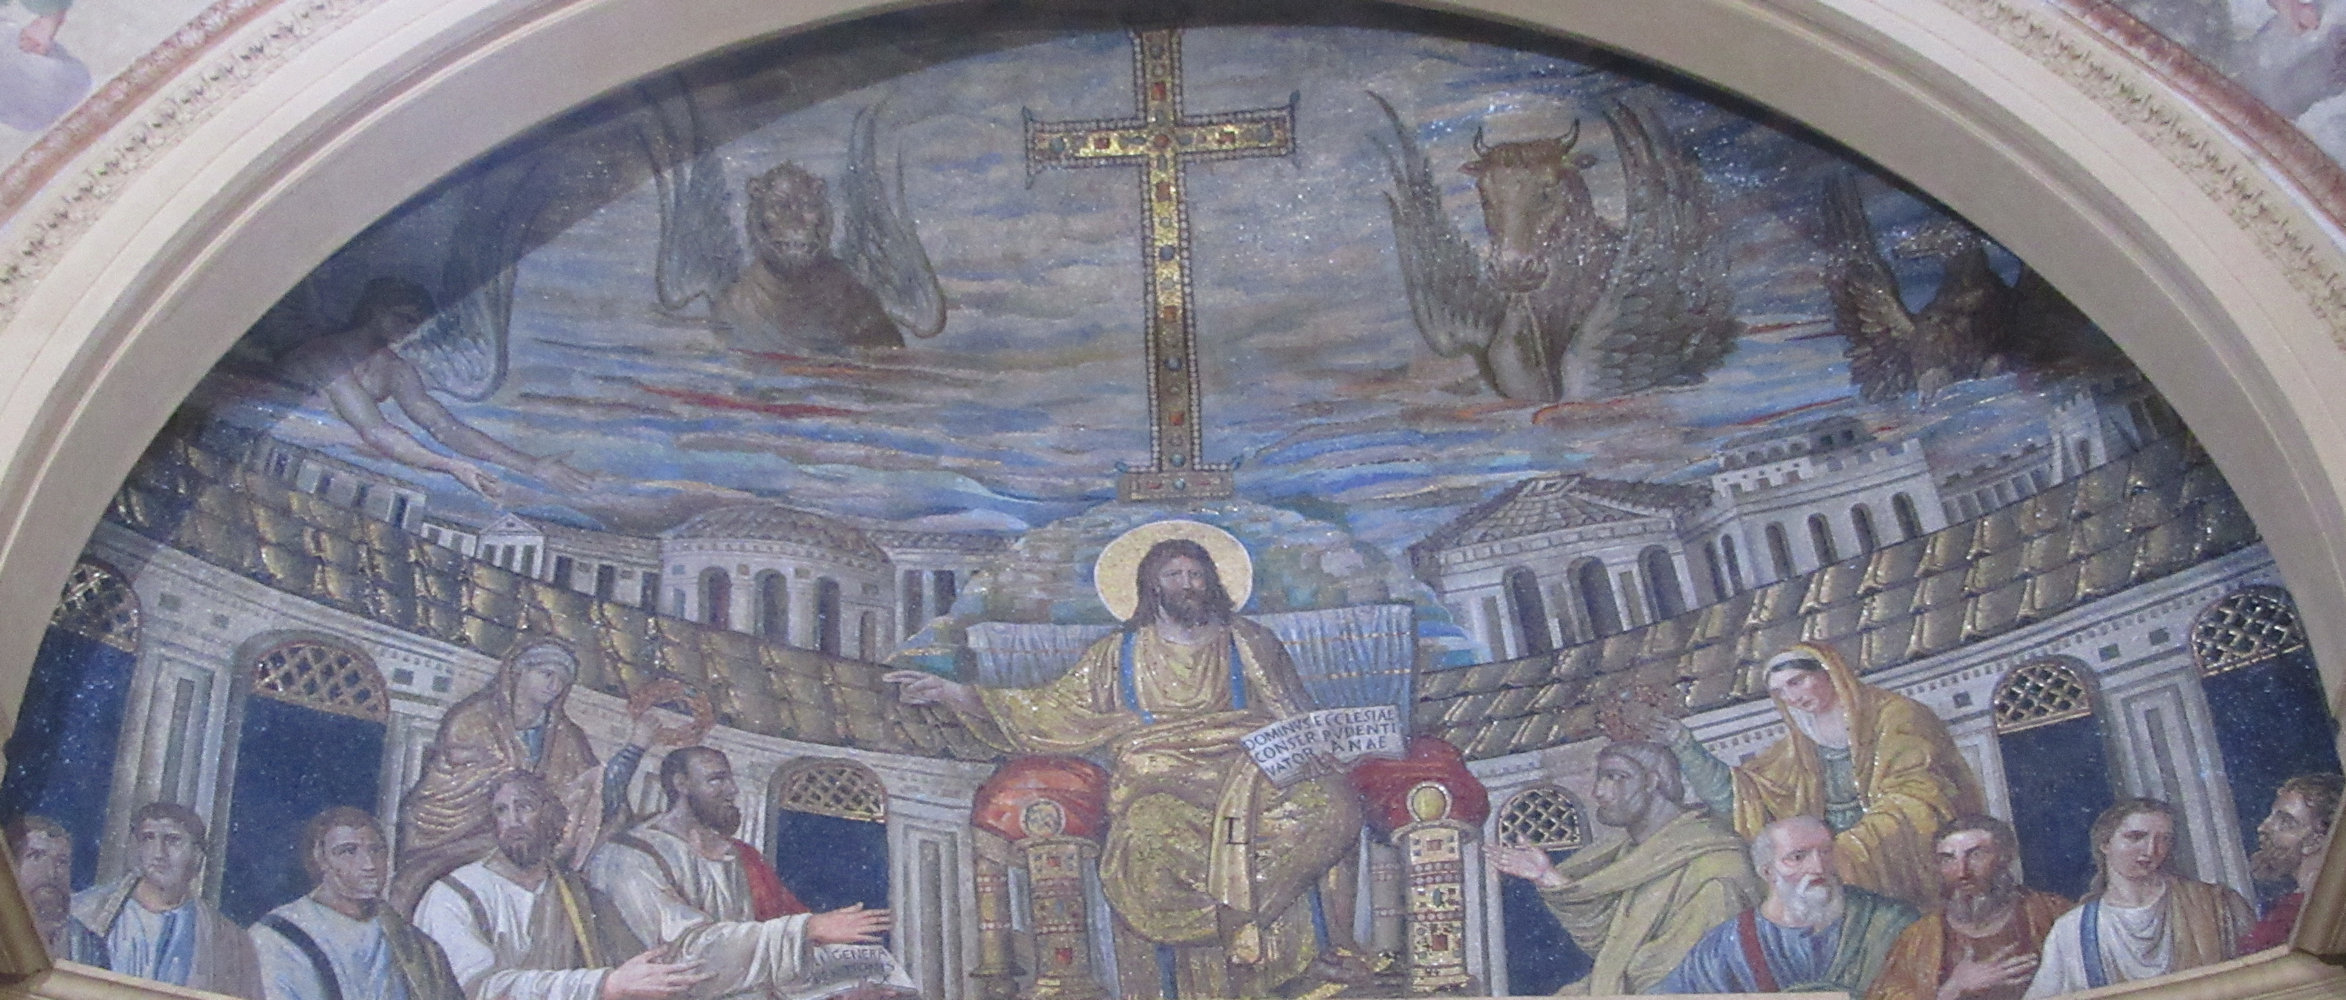 Apsismosaik: Jesus mit den Aposteln (1589 beschnitten durch Renovierungsarbeiten) und Praxedis von Rom (links) sowie Pudentiana, um 390, in der Kirche Santa Pudenziana in Rom